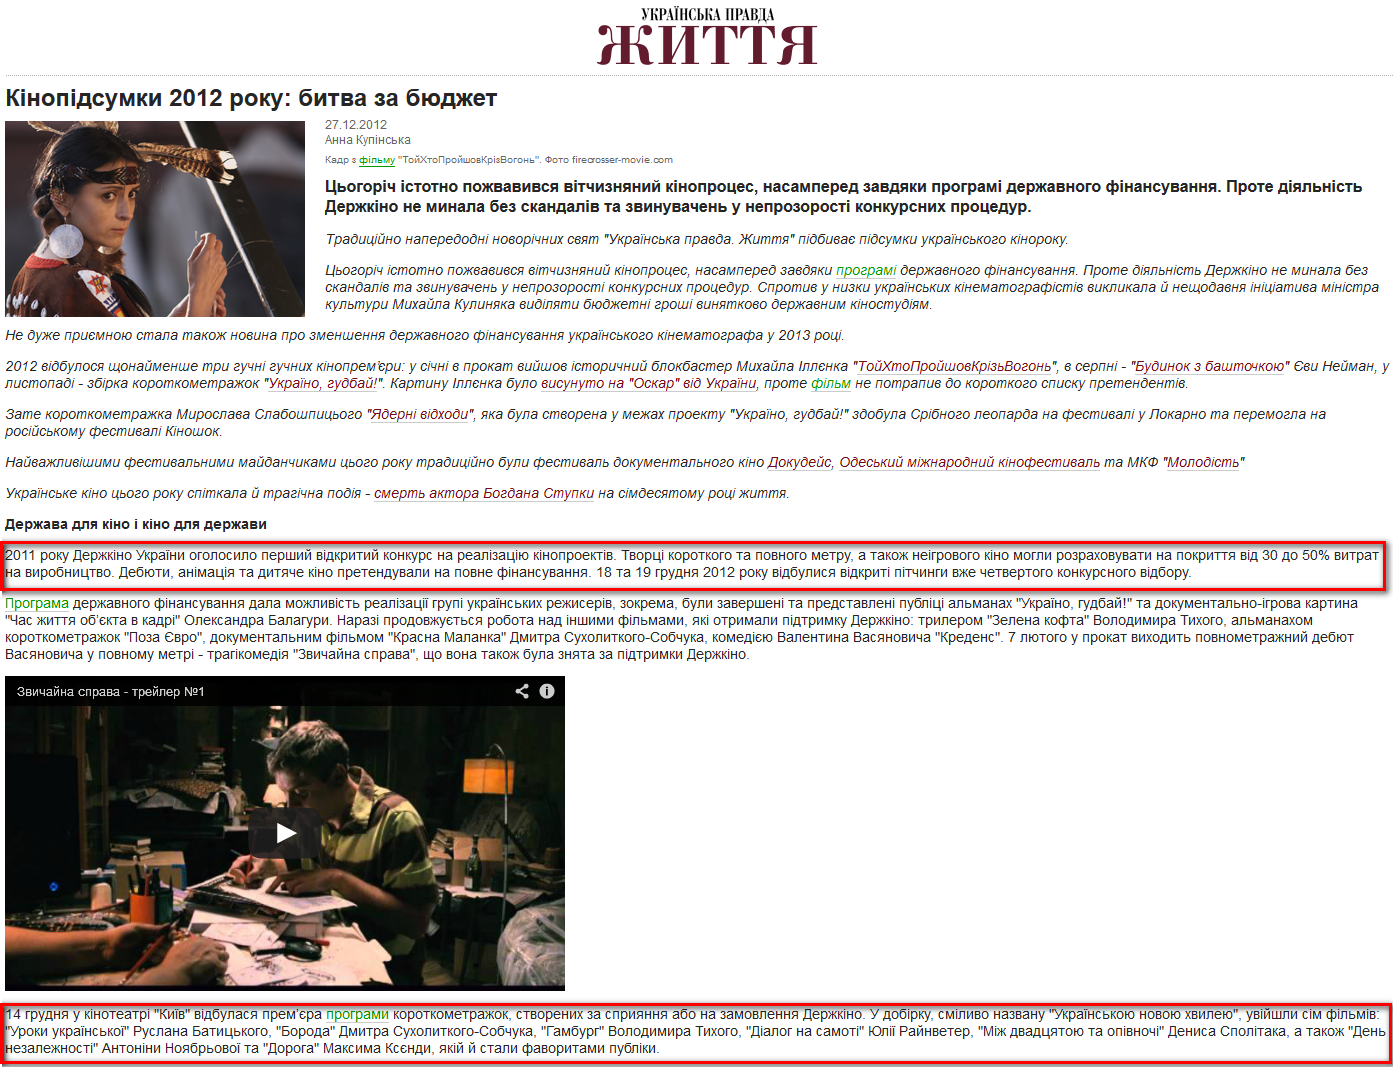 http://life.pravda.com.ua/culture/2012/12/27/118392/view_print/